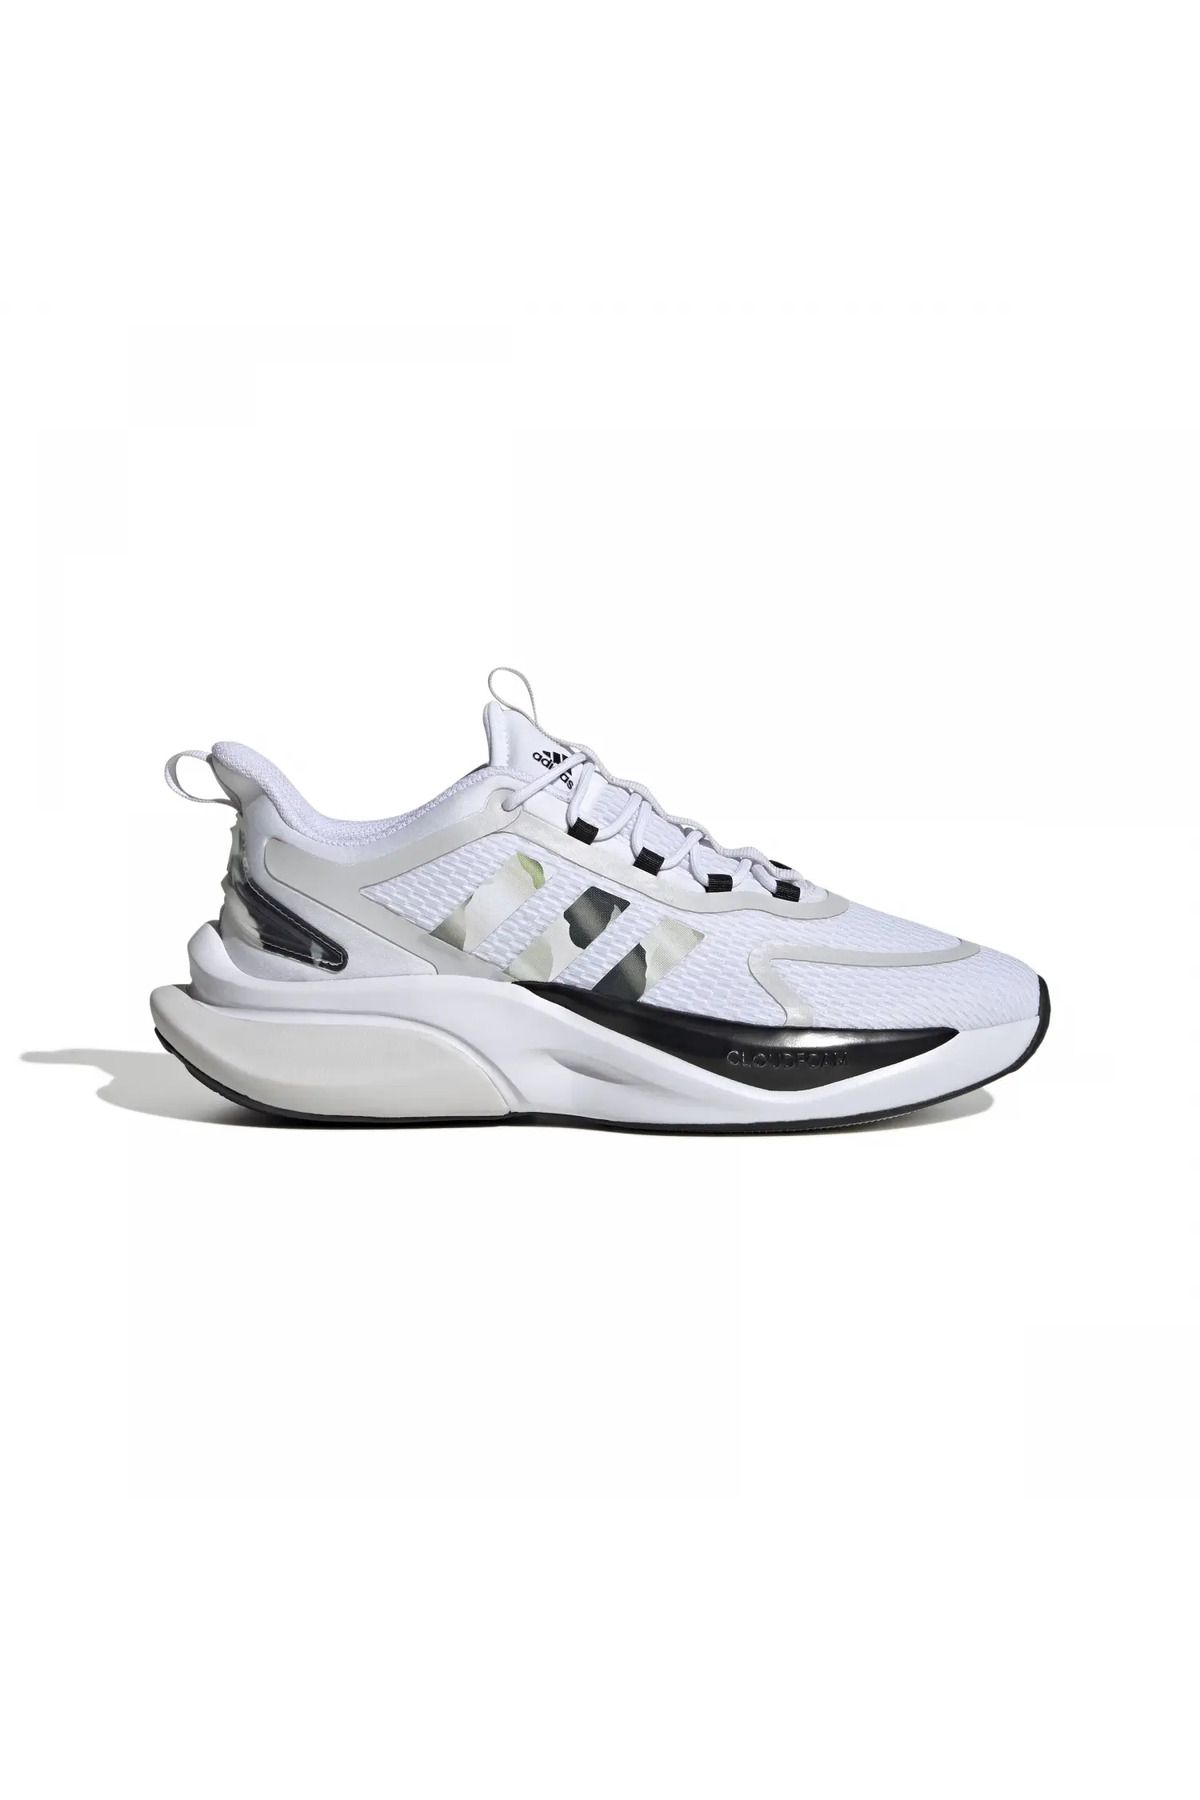 adidas Alphabounce Beyaz Erkek Günlük Ayakkabı Ig3585